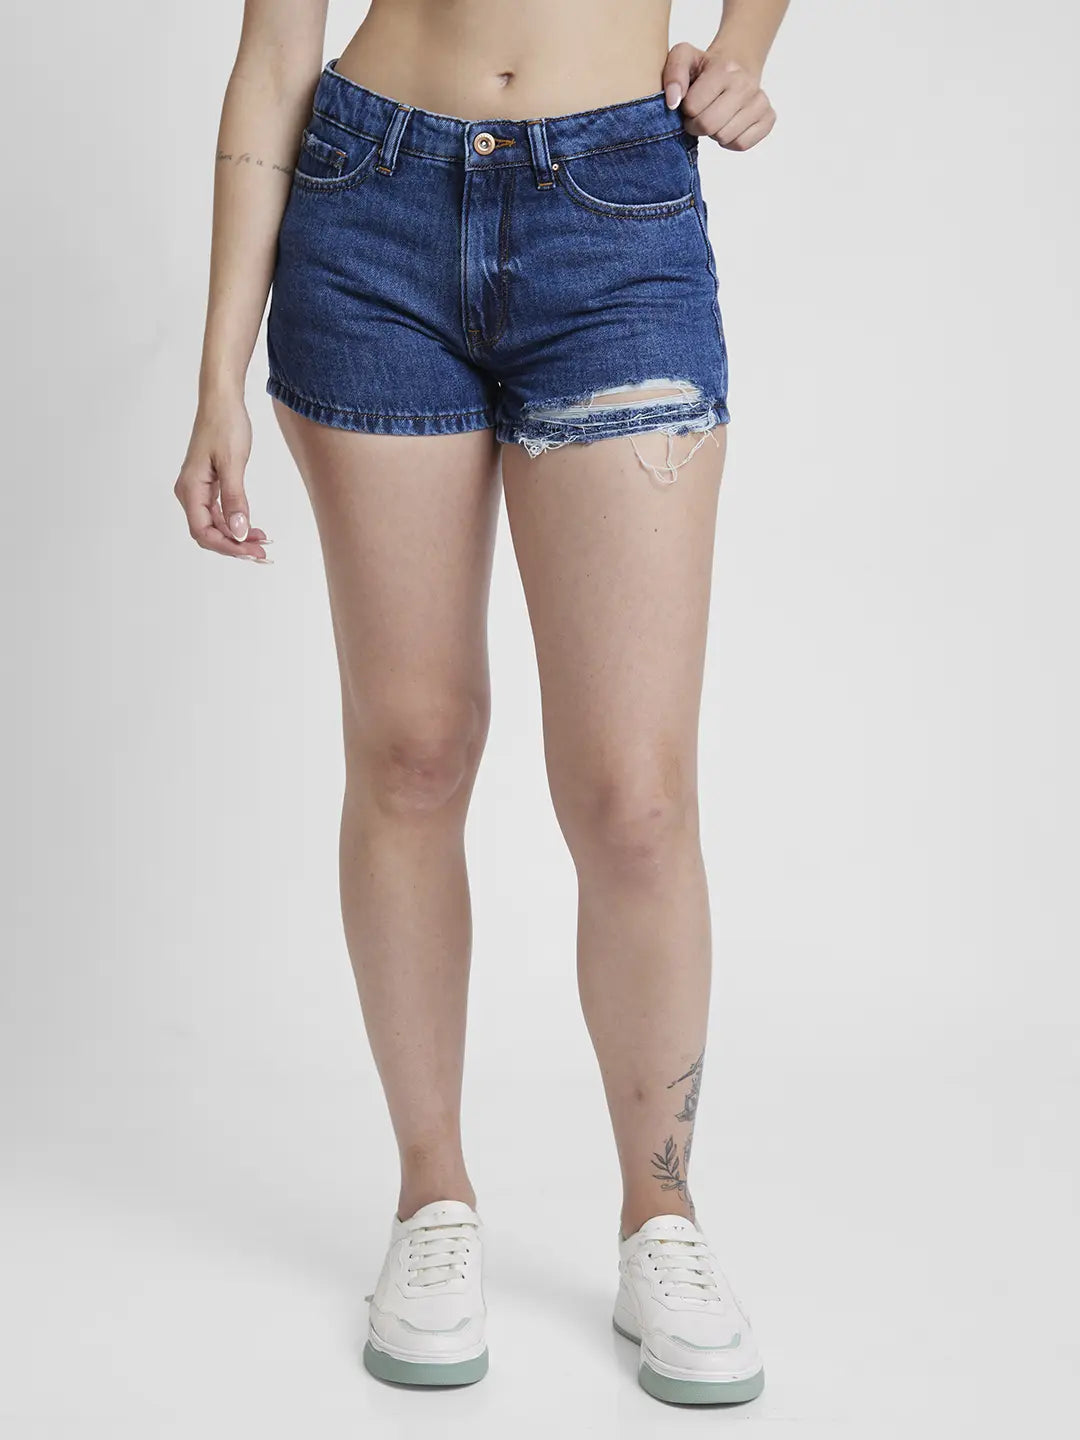 Buy Women's Blue Denim Shorts Online | Go Colors